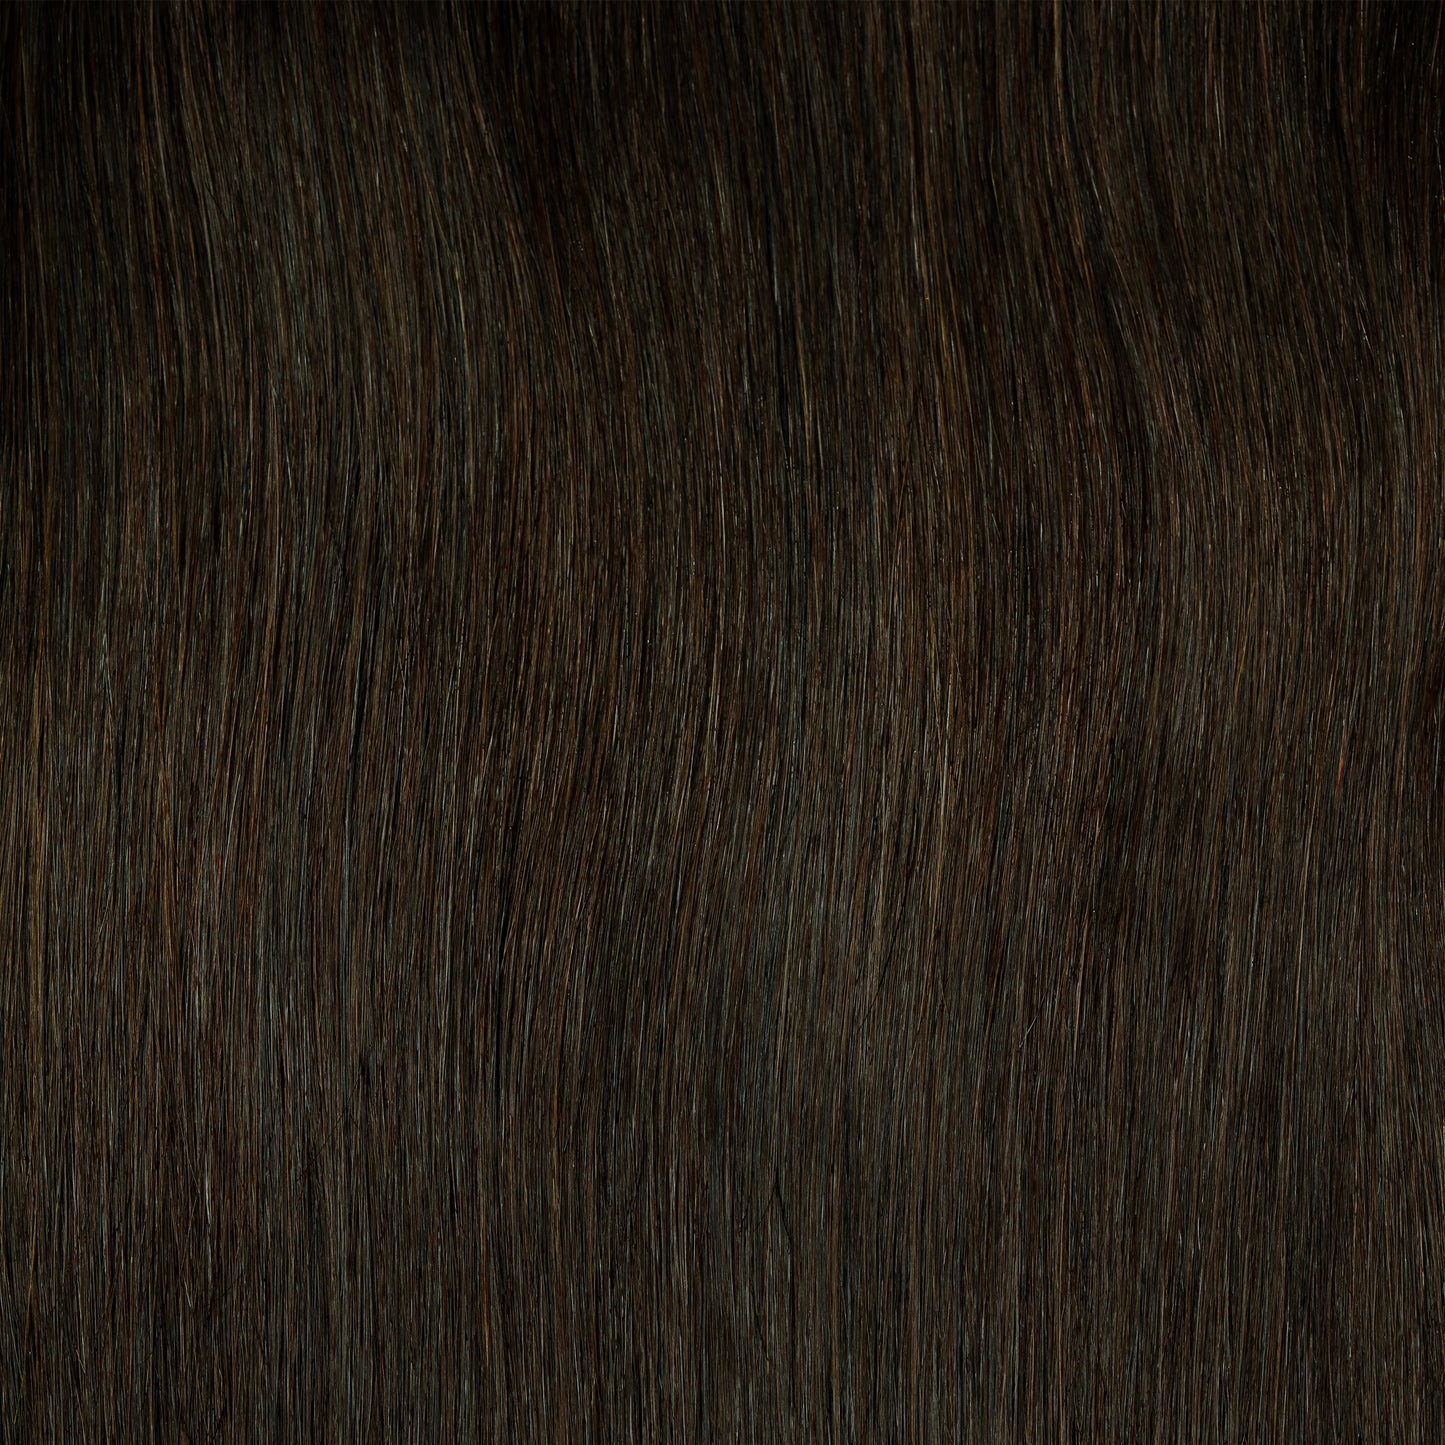 16"  Volume Hair Extensions Dark Brown